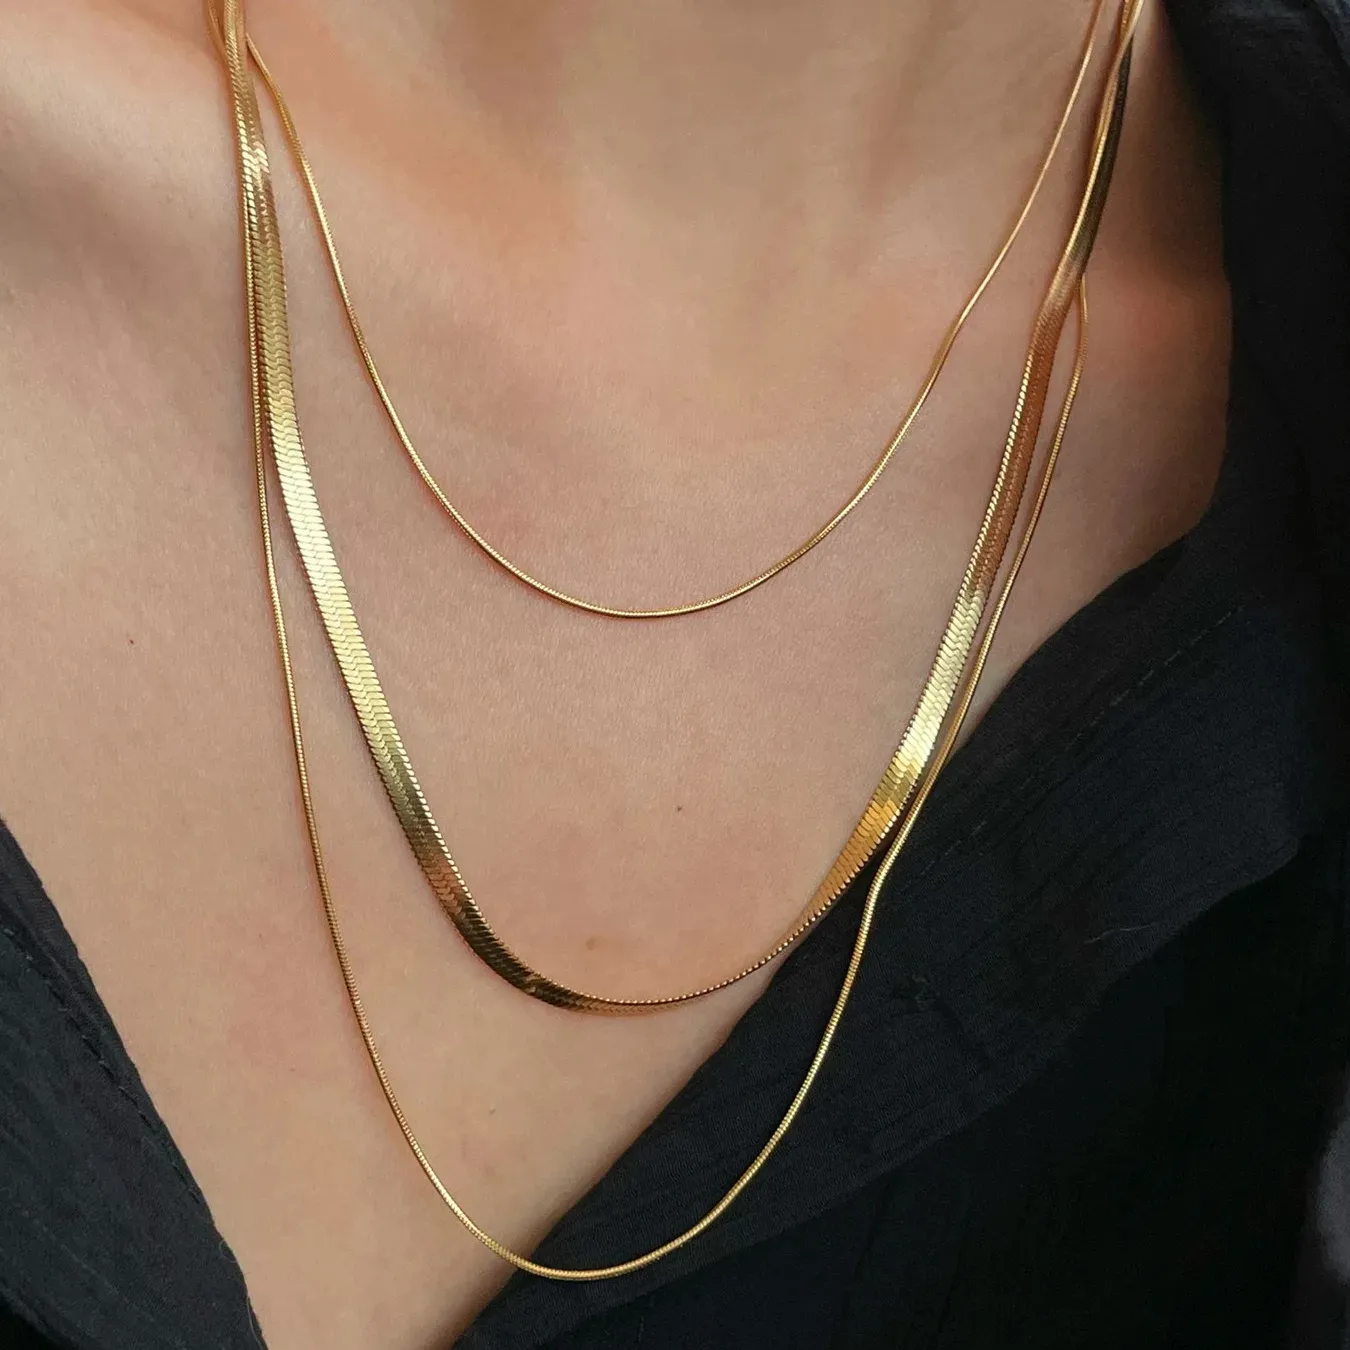 Edelstahl Drei schicht ige Schlangen kette 18 Karat Gold Persönlichkeit Halskette Modeschmuck für Frauen